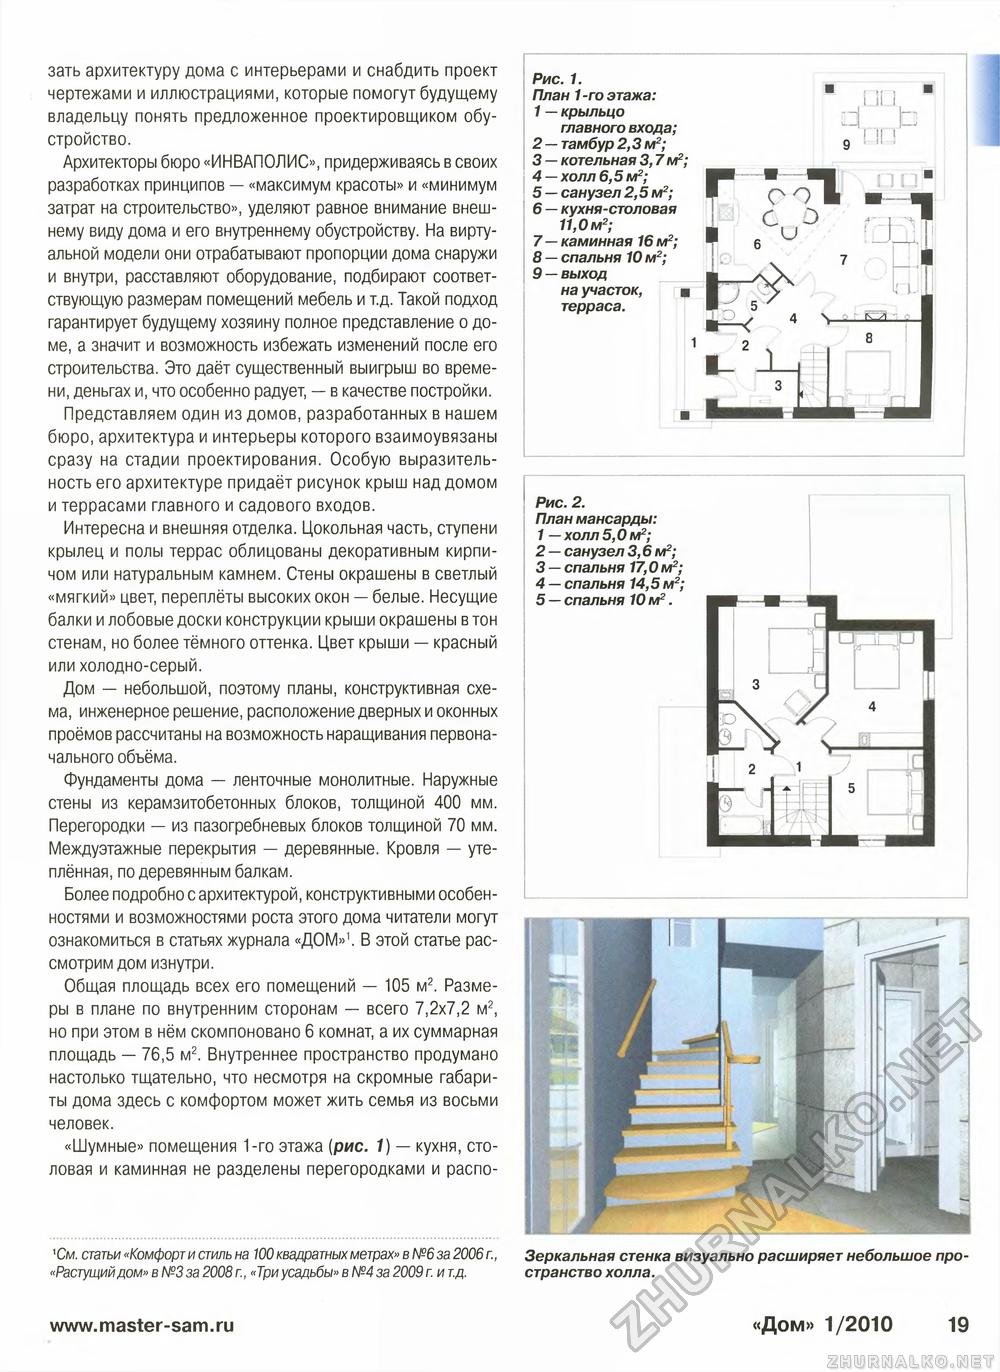 Дом 2010-01, страница 19